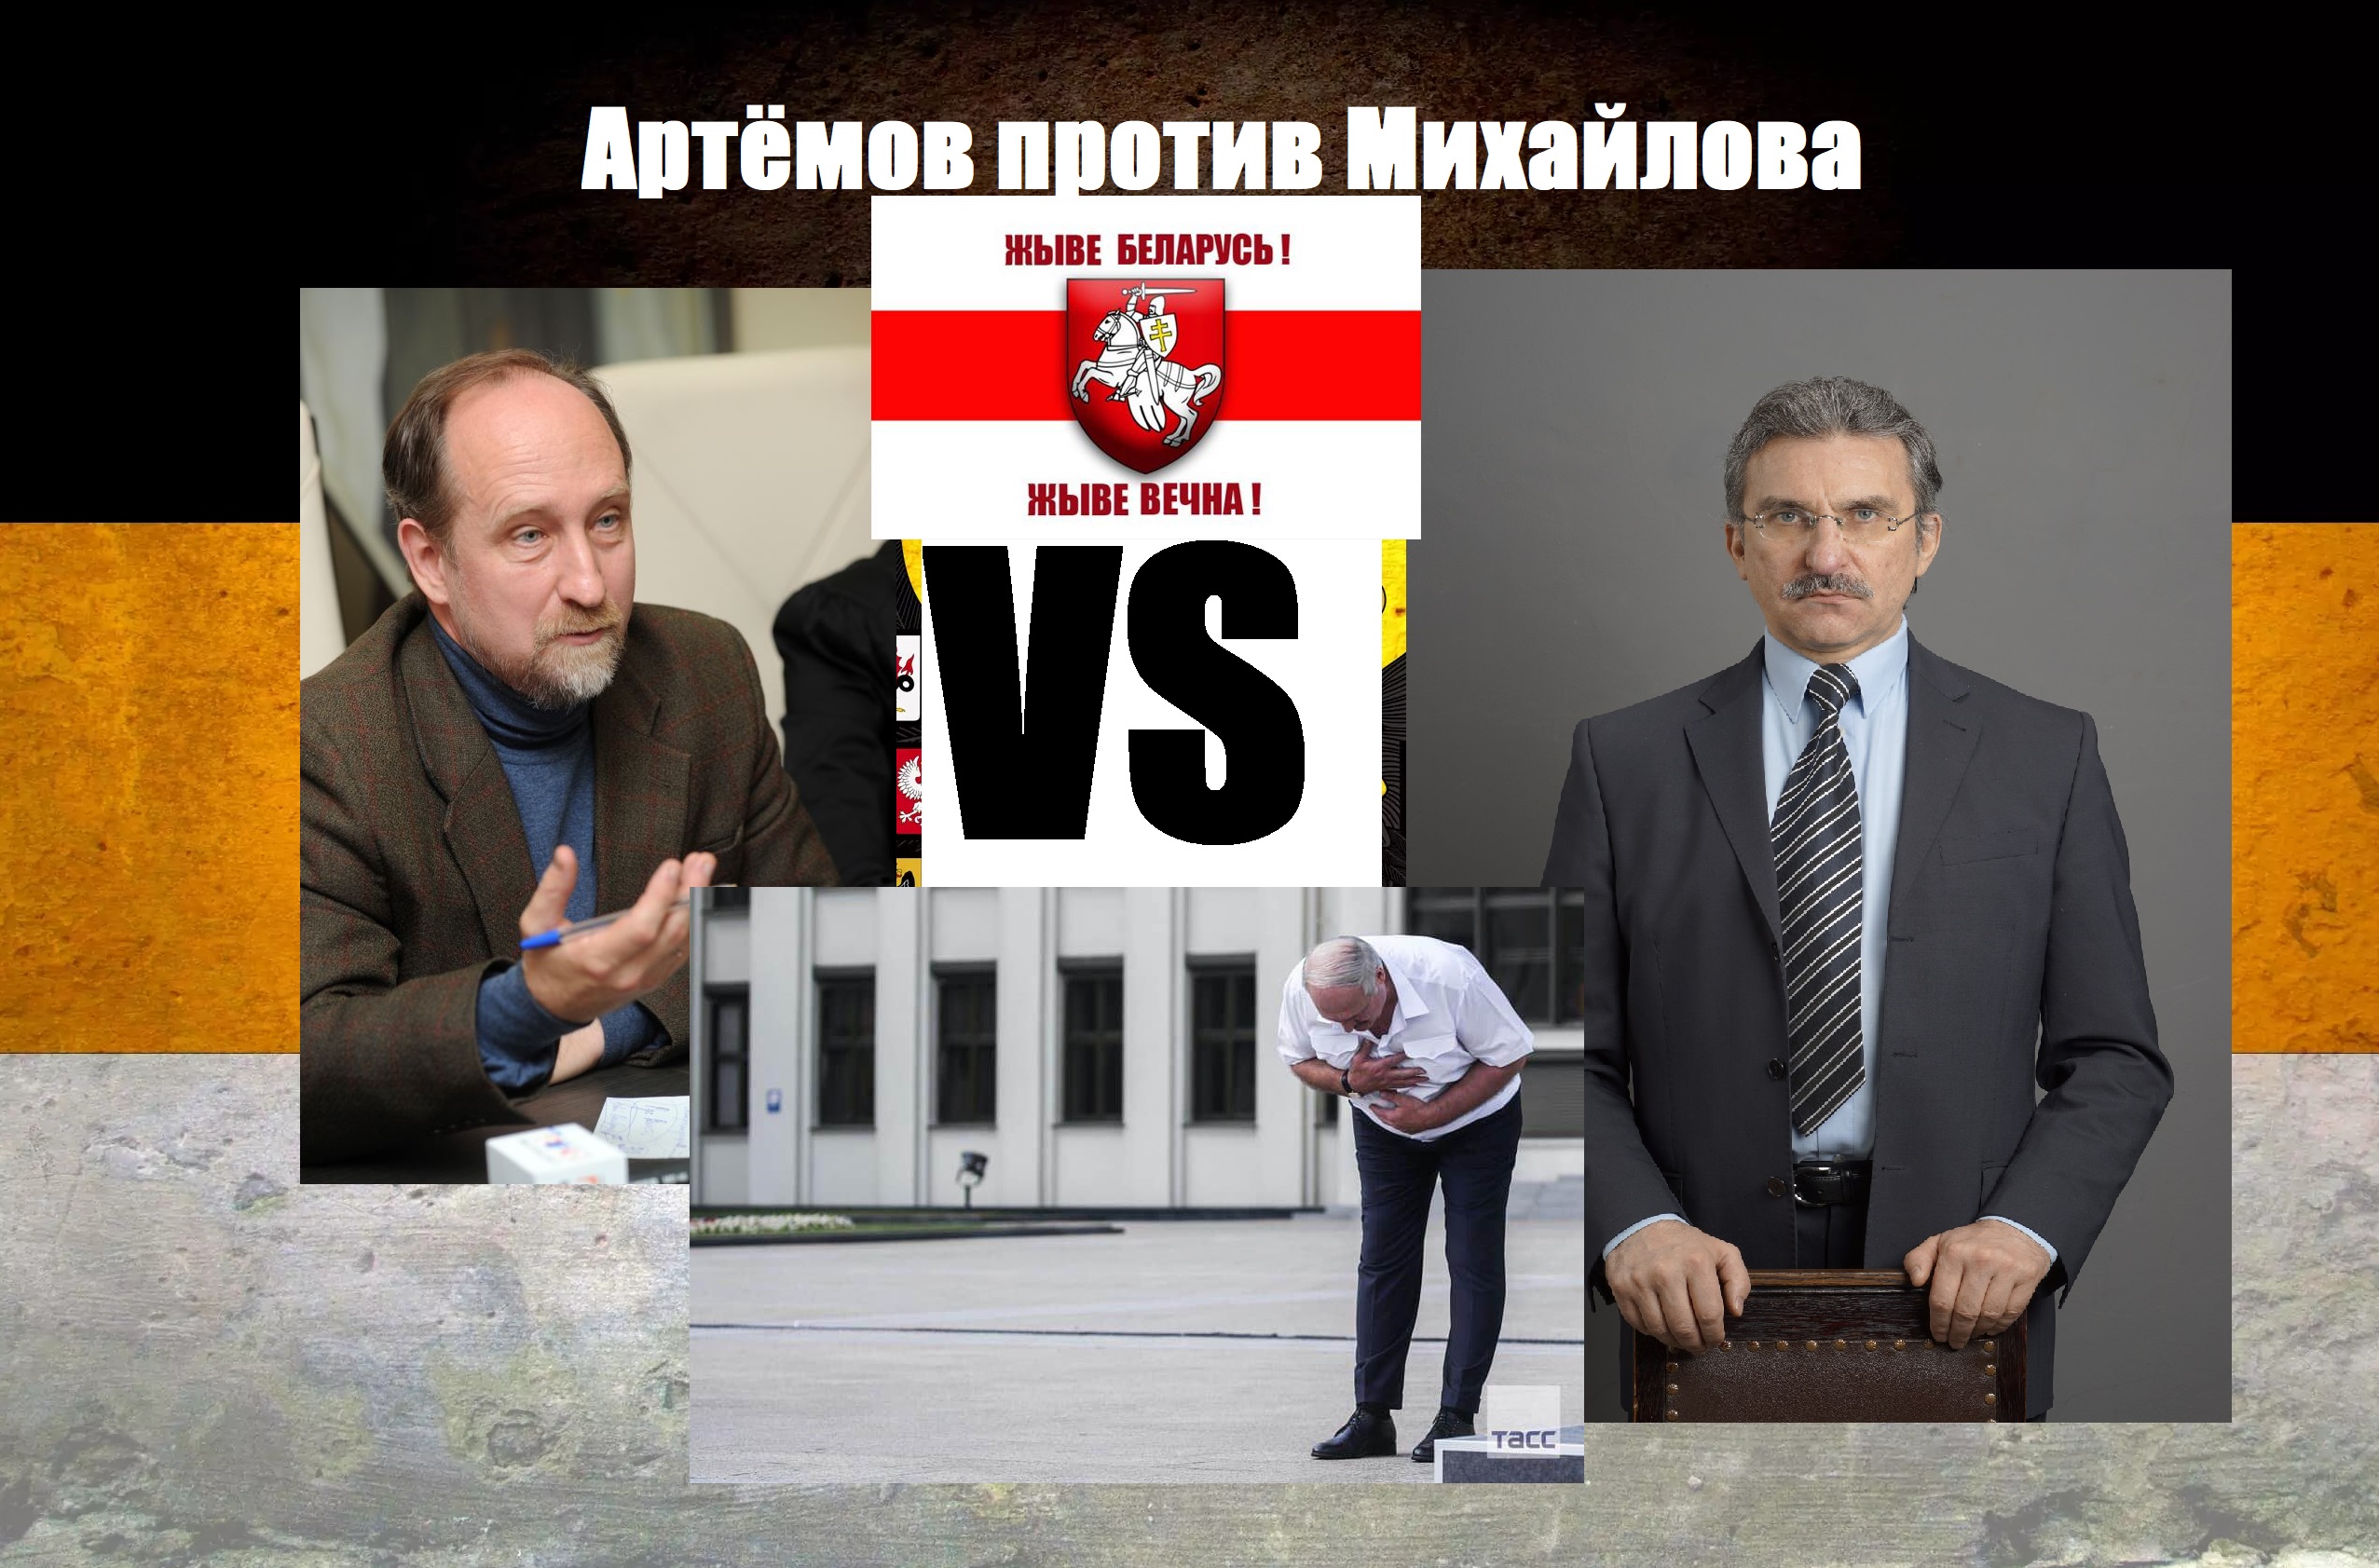 Дебаты Артёмов против Михайлова по Лукашенко